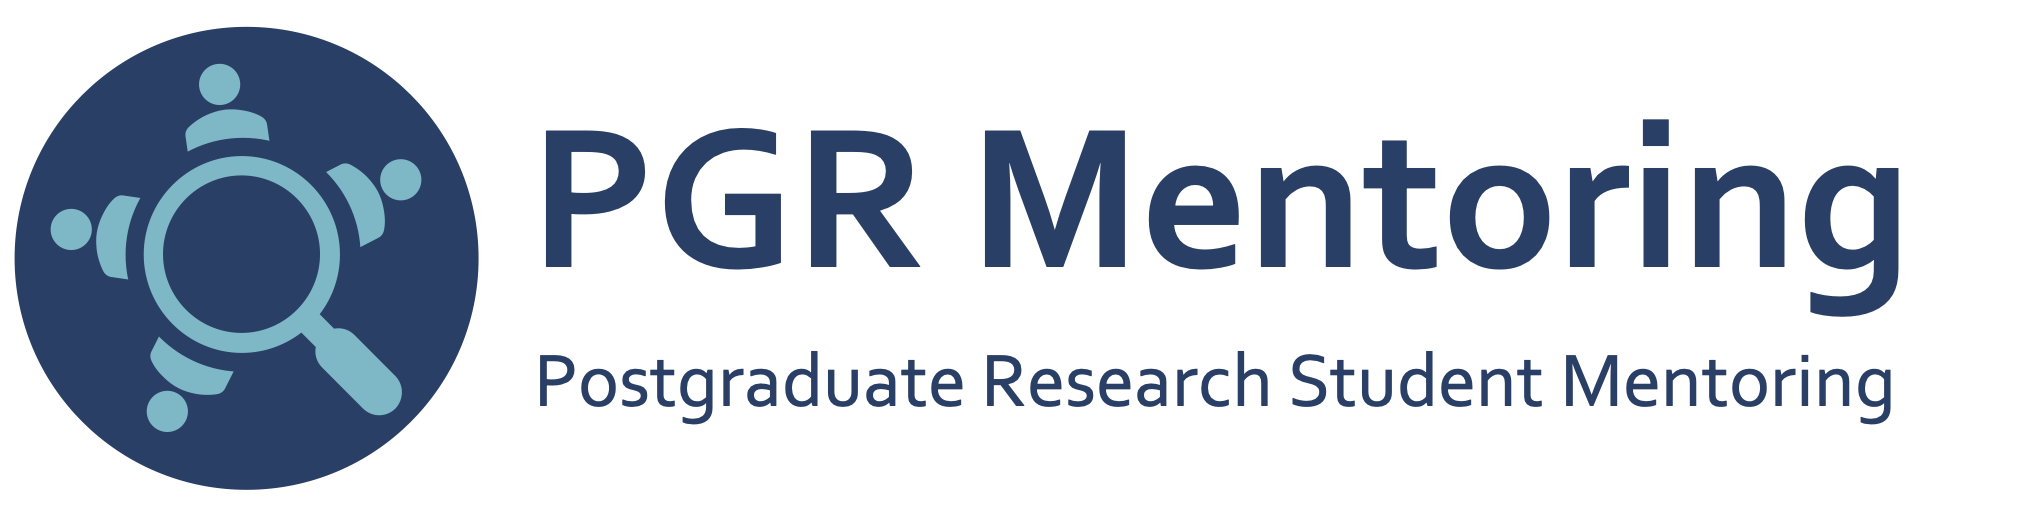 PGR Mentoring Logo